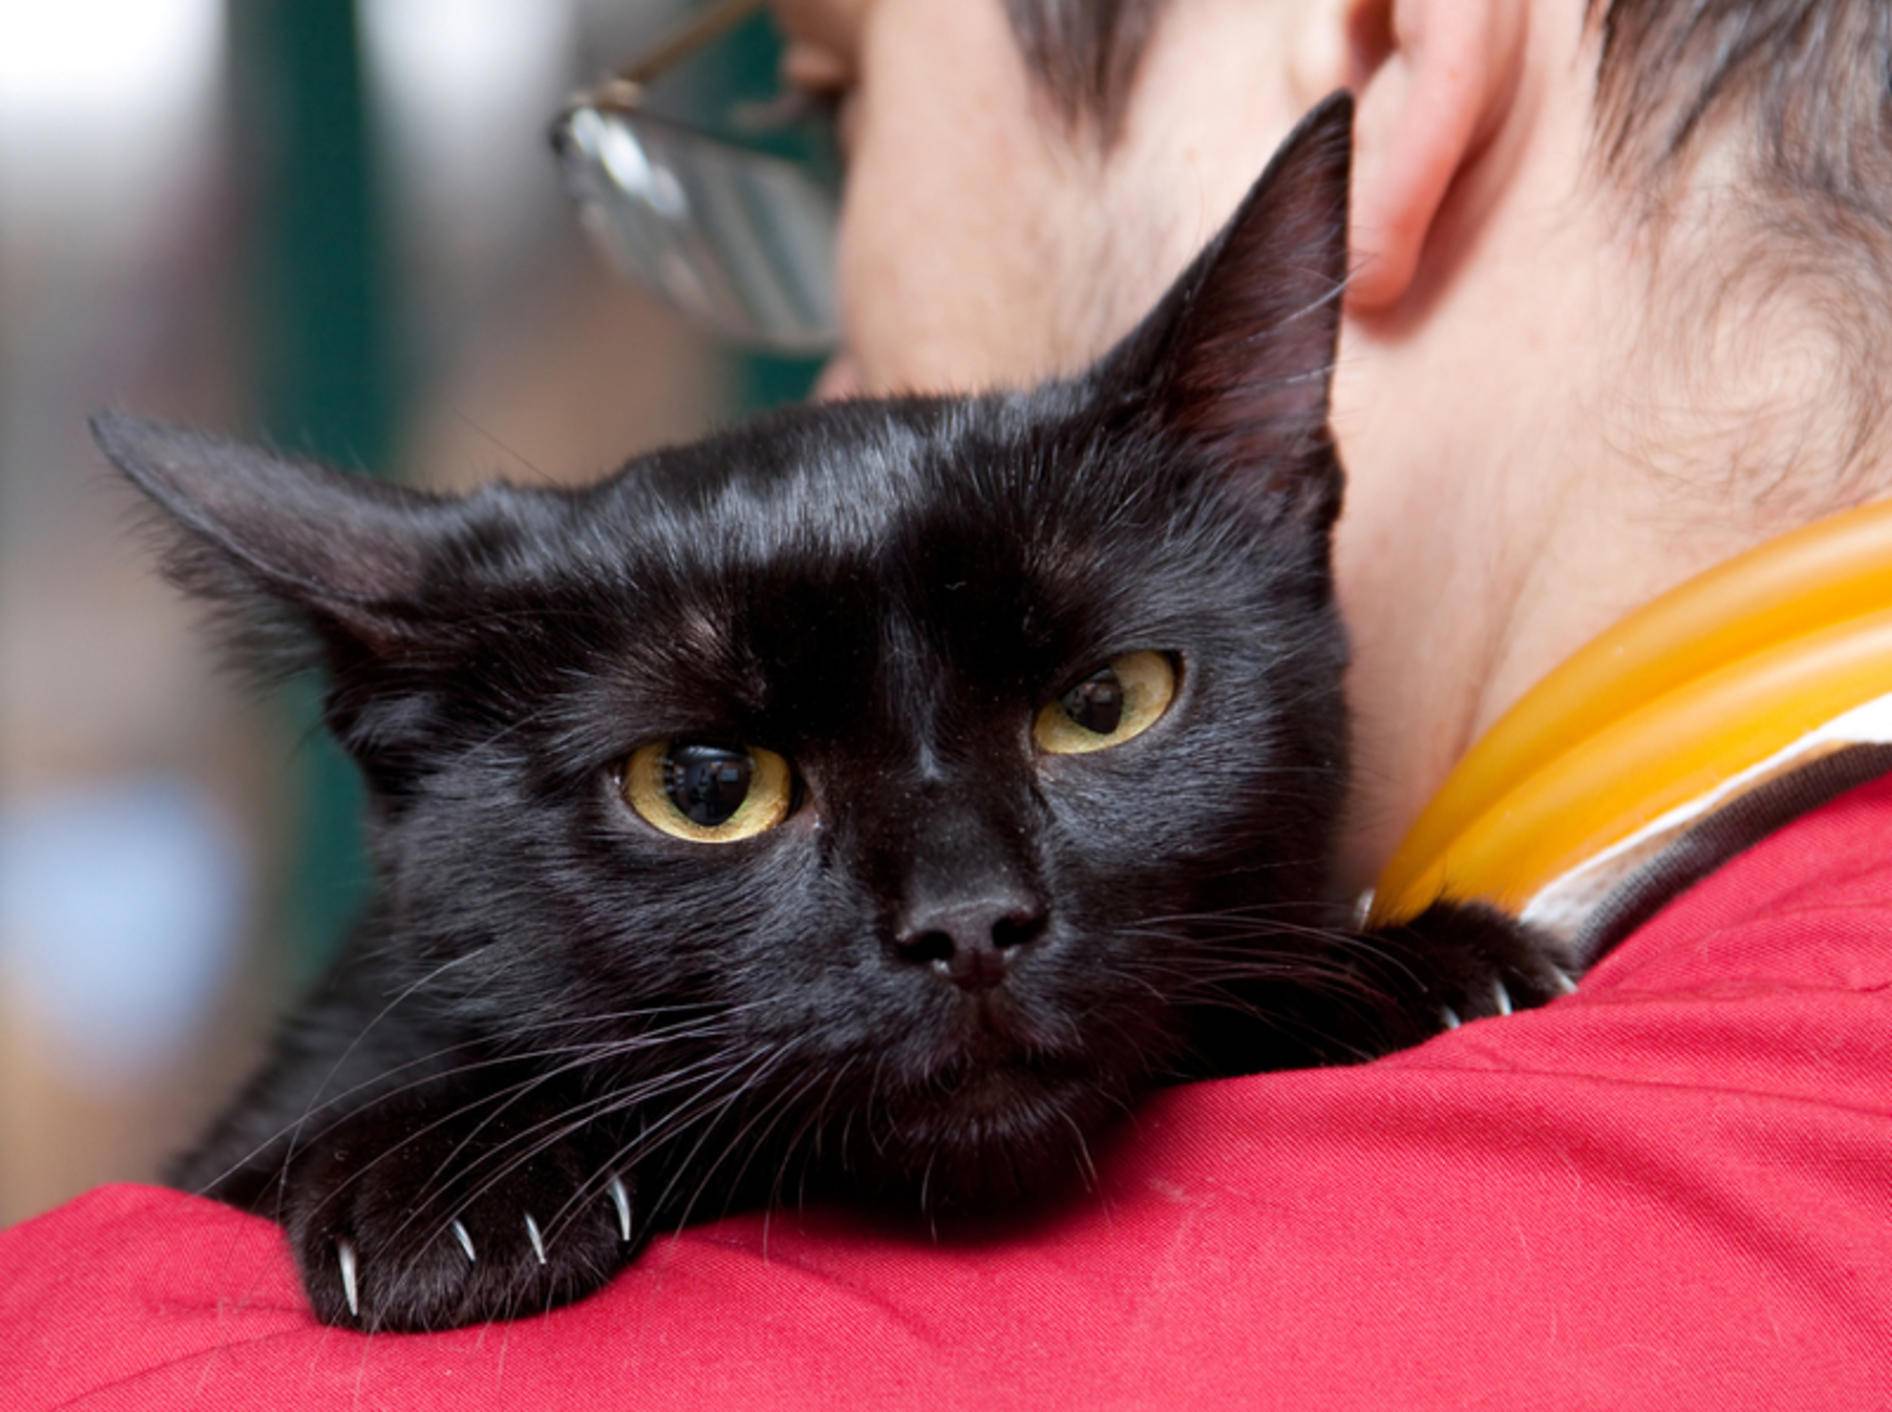 Die Krankheit FIV wird von Katze zu Katze übertragen – Bild: Shutterstock / melis